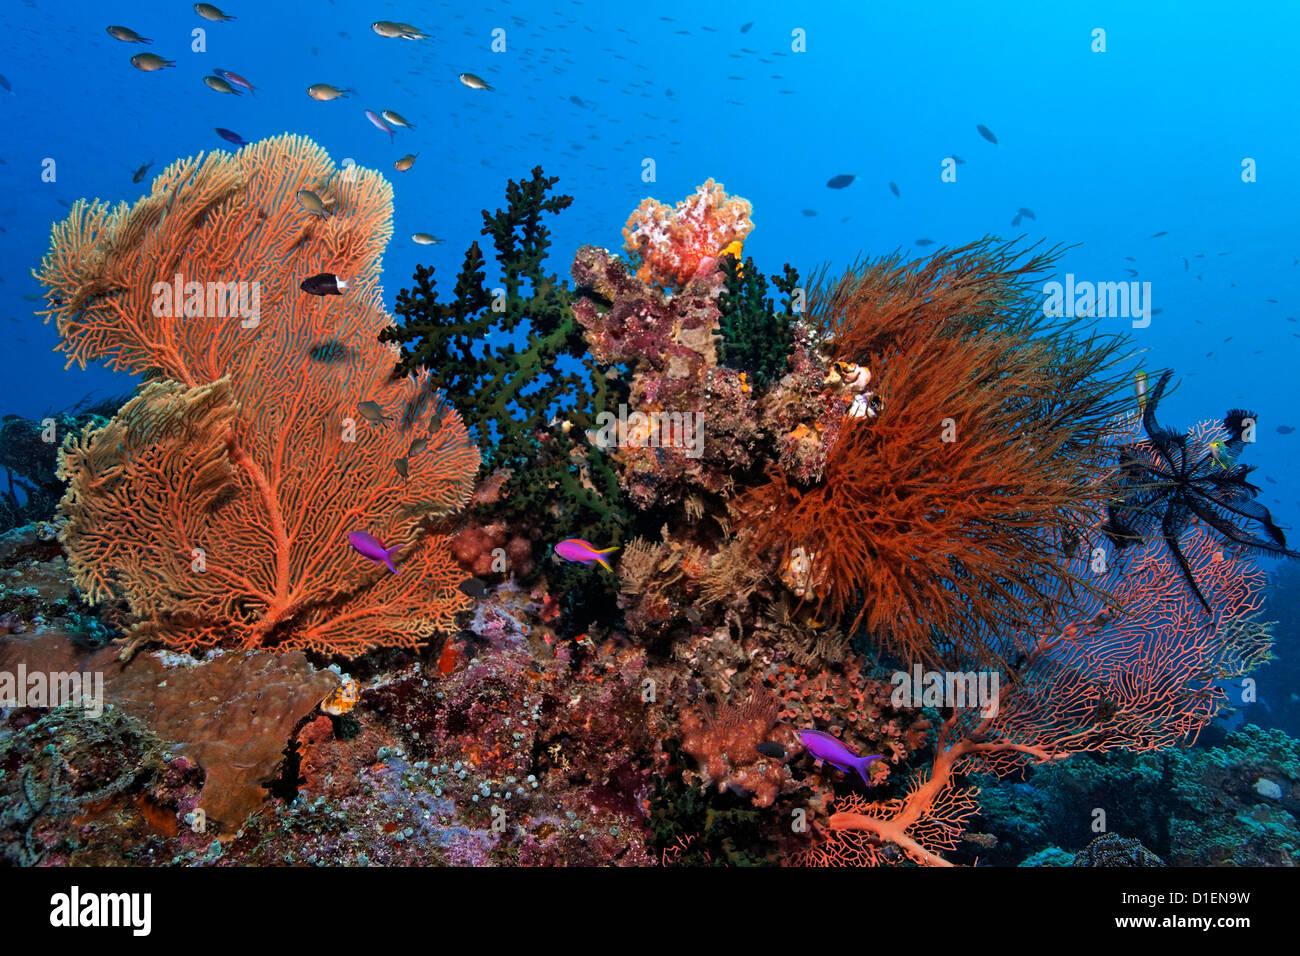 Paysage avec différents récifs coraux mous et durs, Kavieng, New Ireland, Papouasie Nouvelle Guinée, underwater Banque D'Images